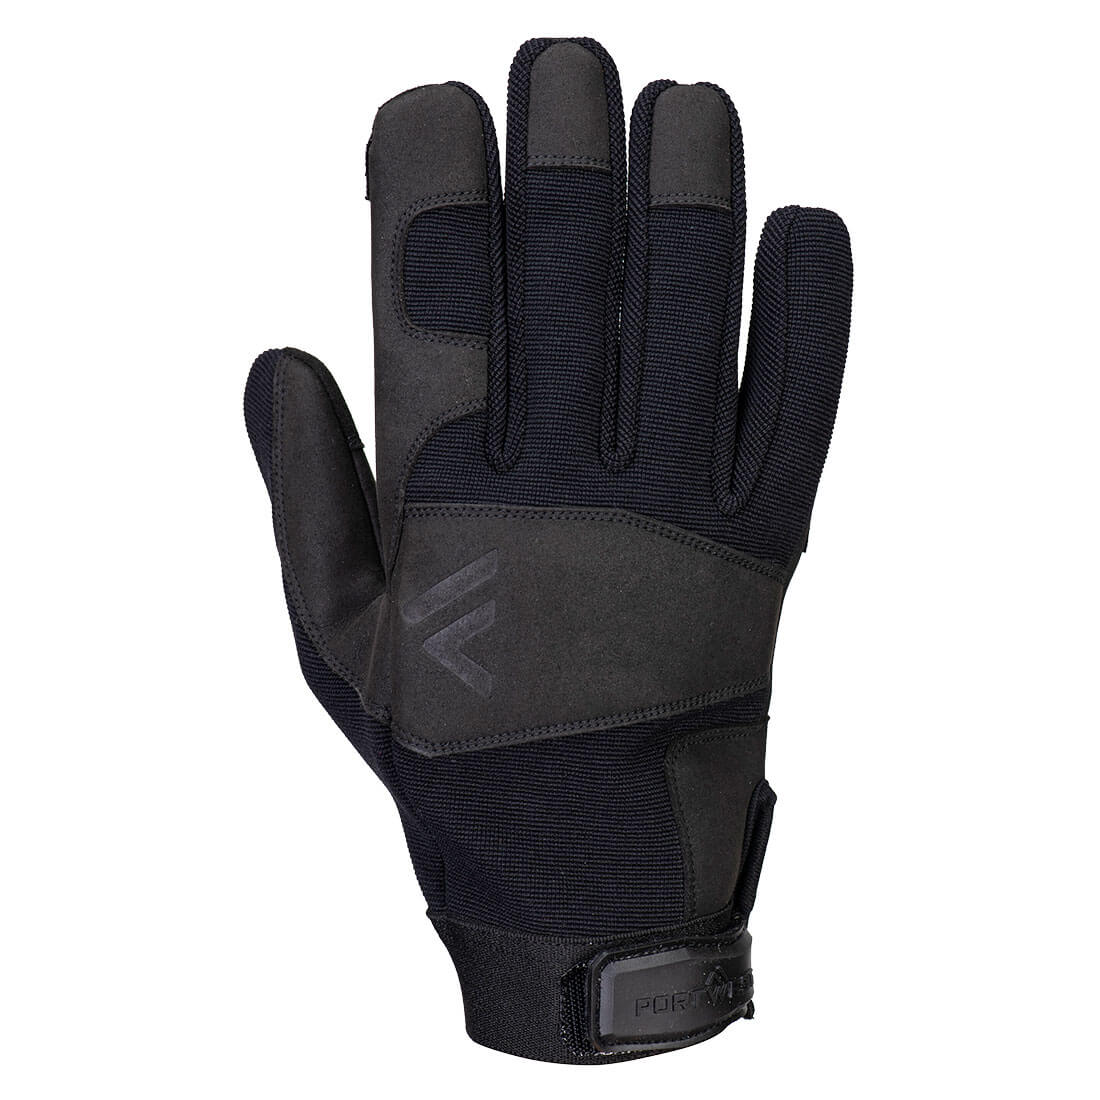 A772 - Pro Utility Glove